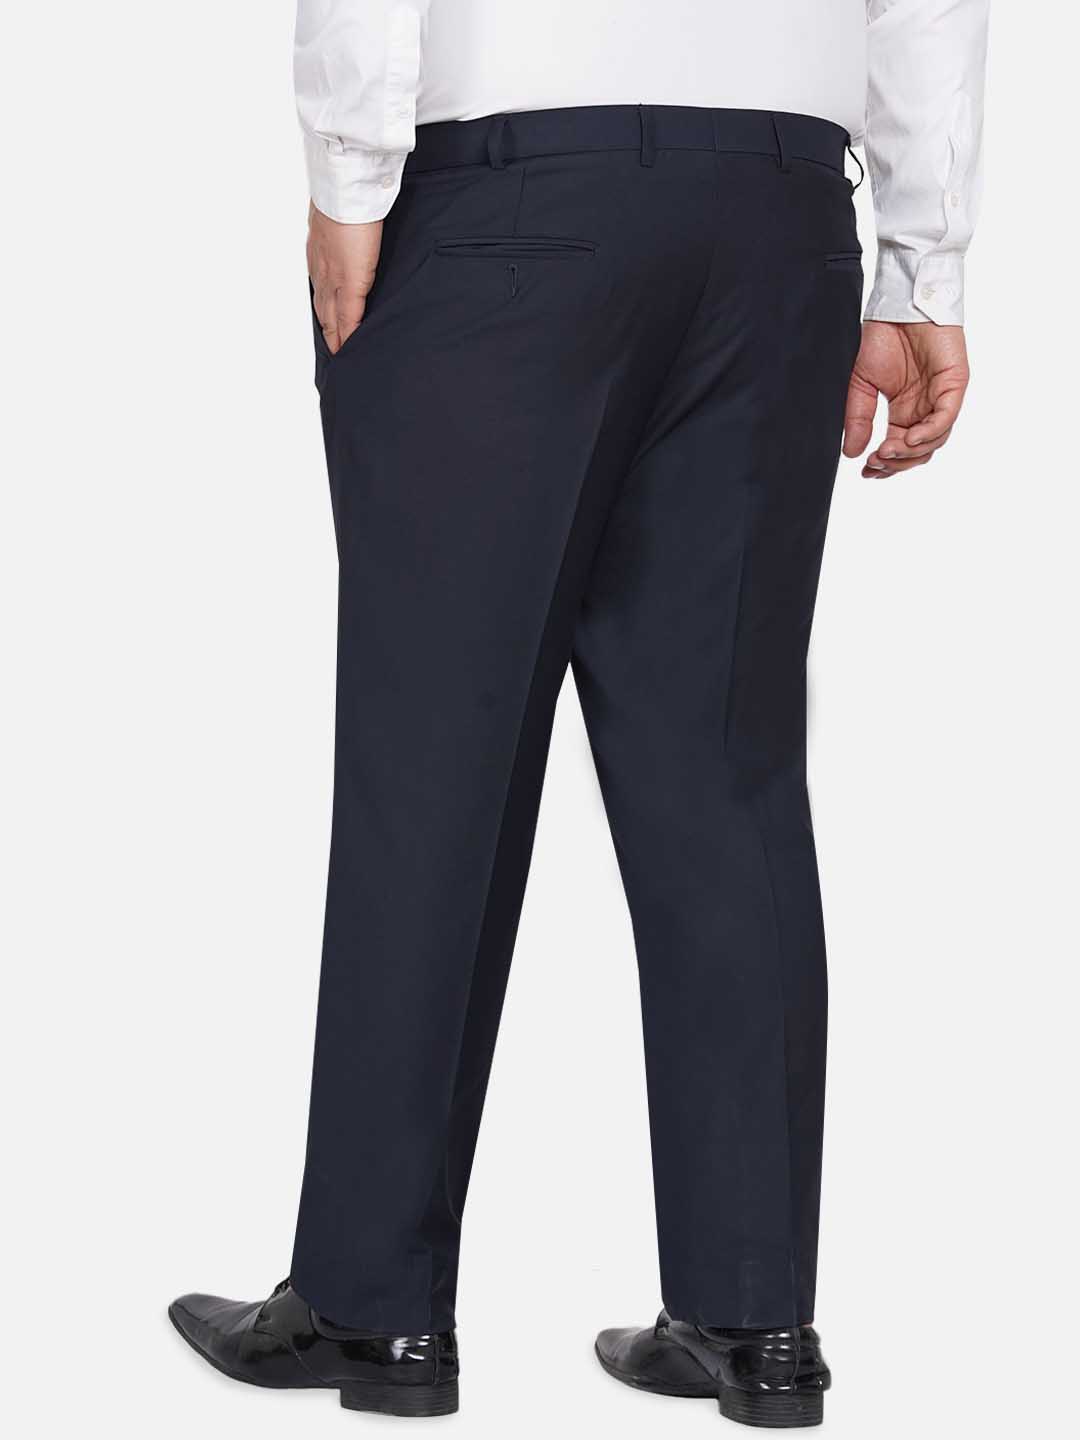 bottomwear/trousers/JPTR22010F/jptr22010f-5.jpg